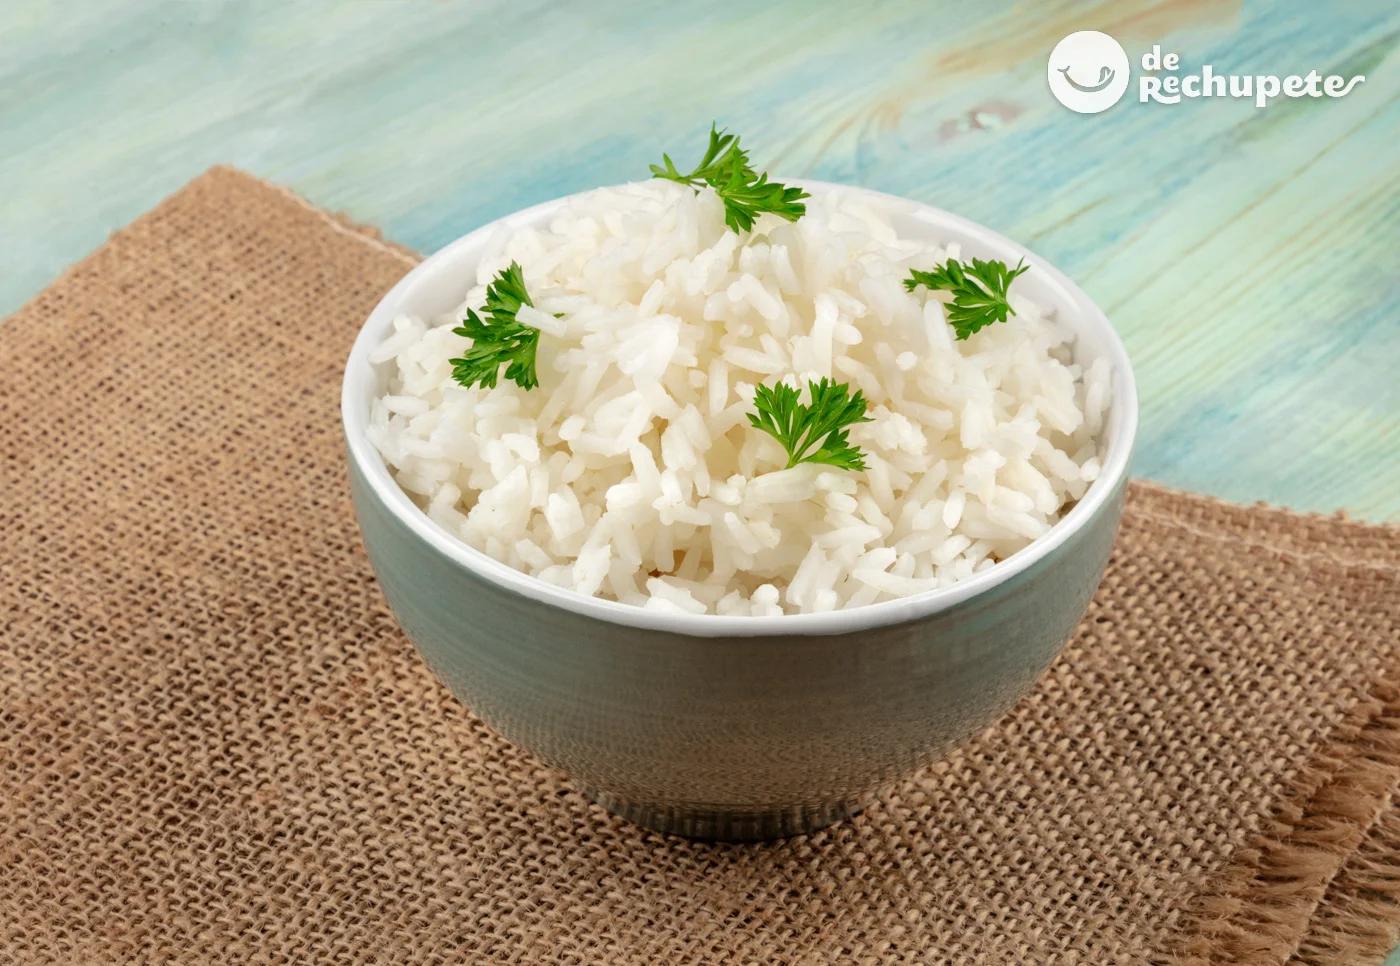 arroz sin cocer aves - Cuánto dura el arroz sin cocer